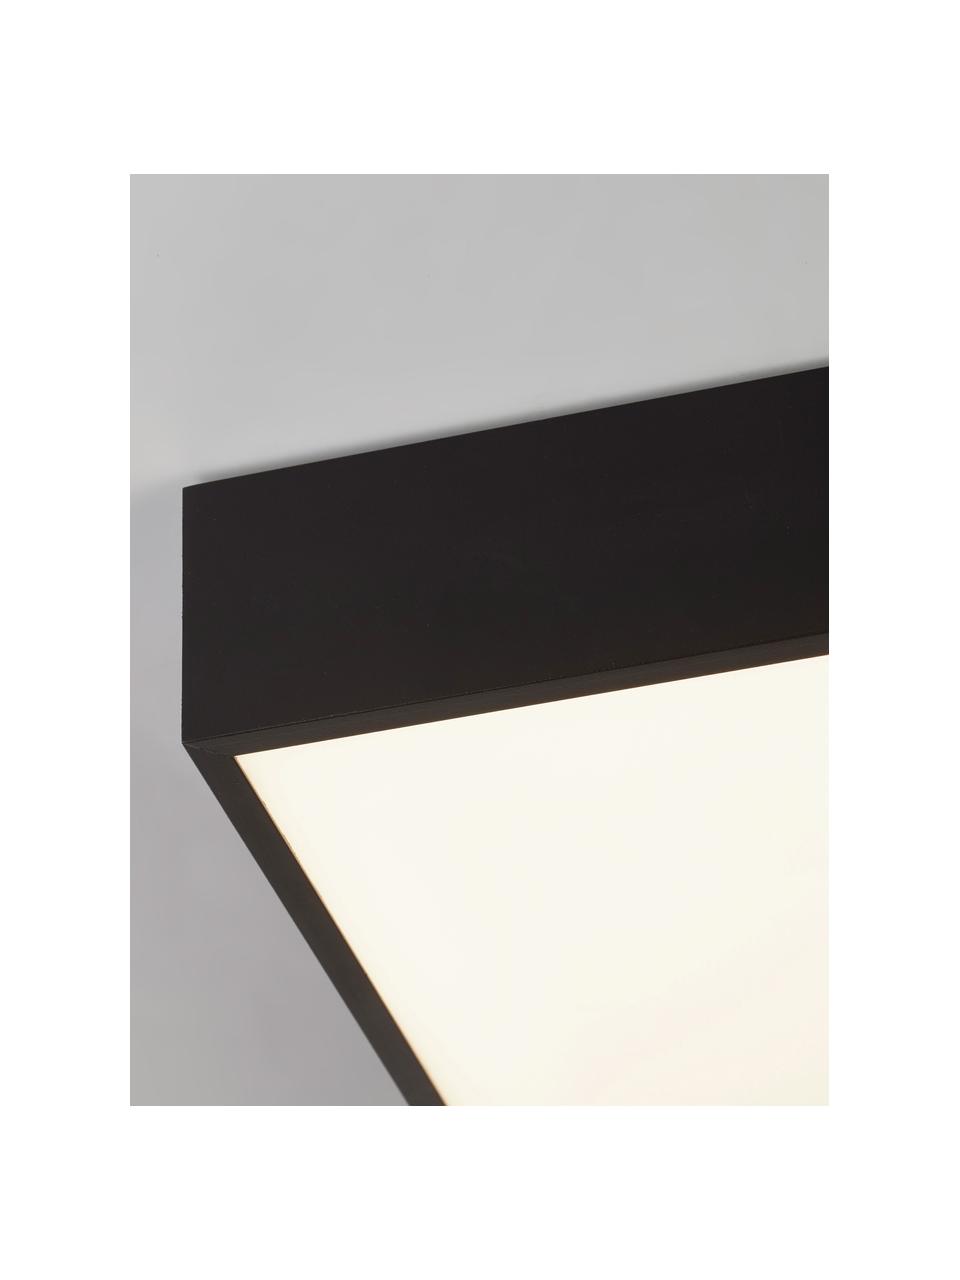 Lampa sufitowa LED Zeus, Czarny, S 30 x W 6 cm